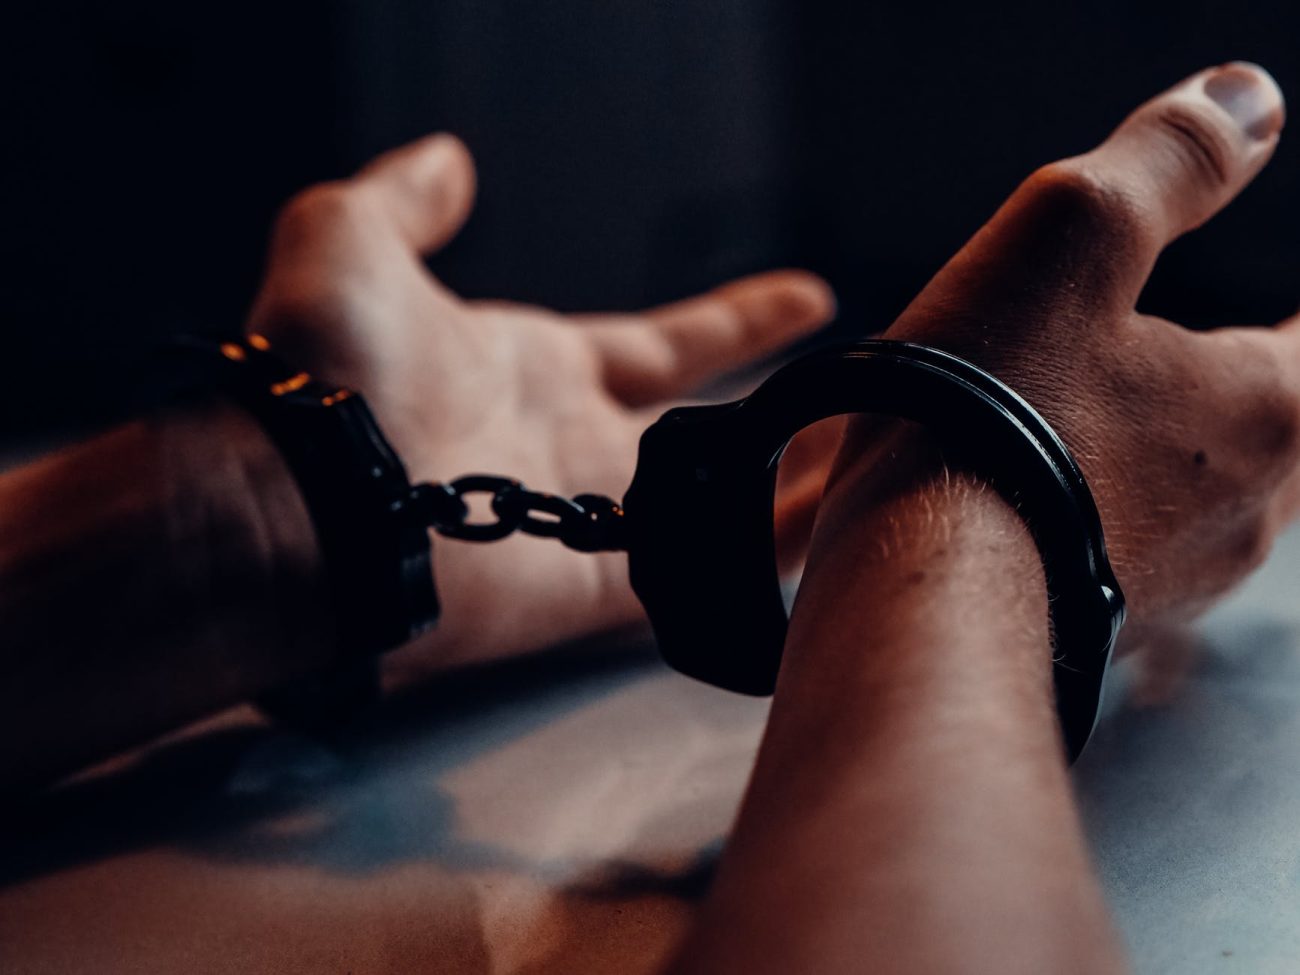 Συνελήφθη 17χρονος για κλοπές από σπίτια σε Μαρούσι και Παπάγου